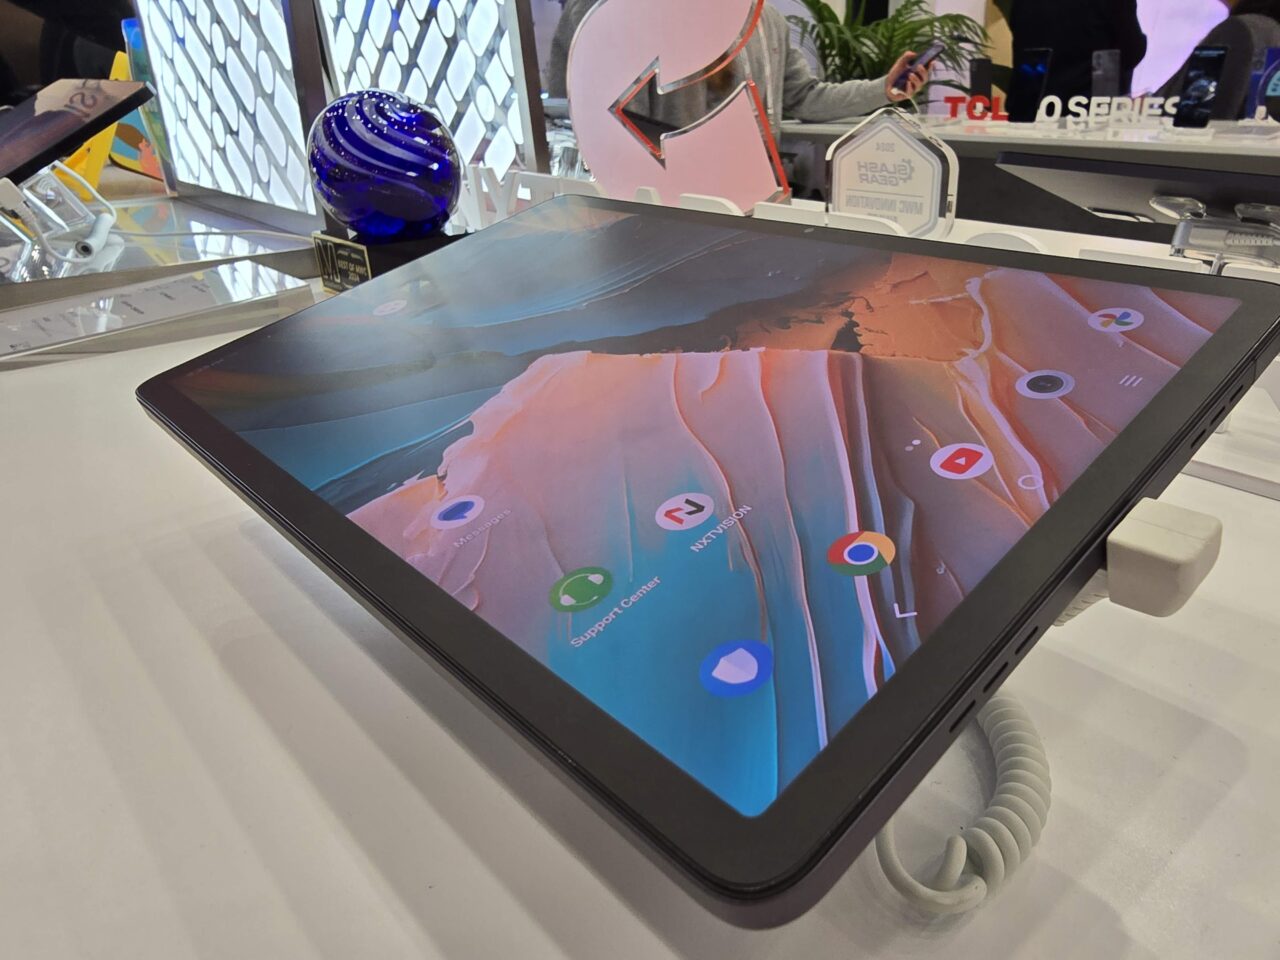 Tablet leżący na białym stole z włączonym ekranem, otoczony przez różne przedmioty, takie jak kula szklana i reklamówki.